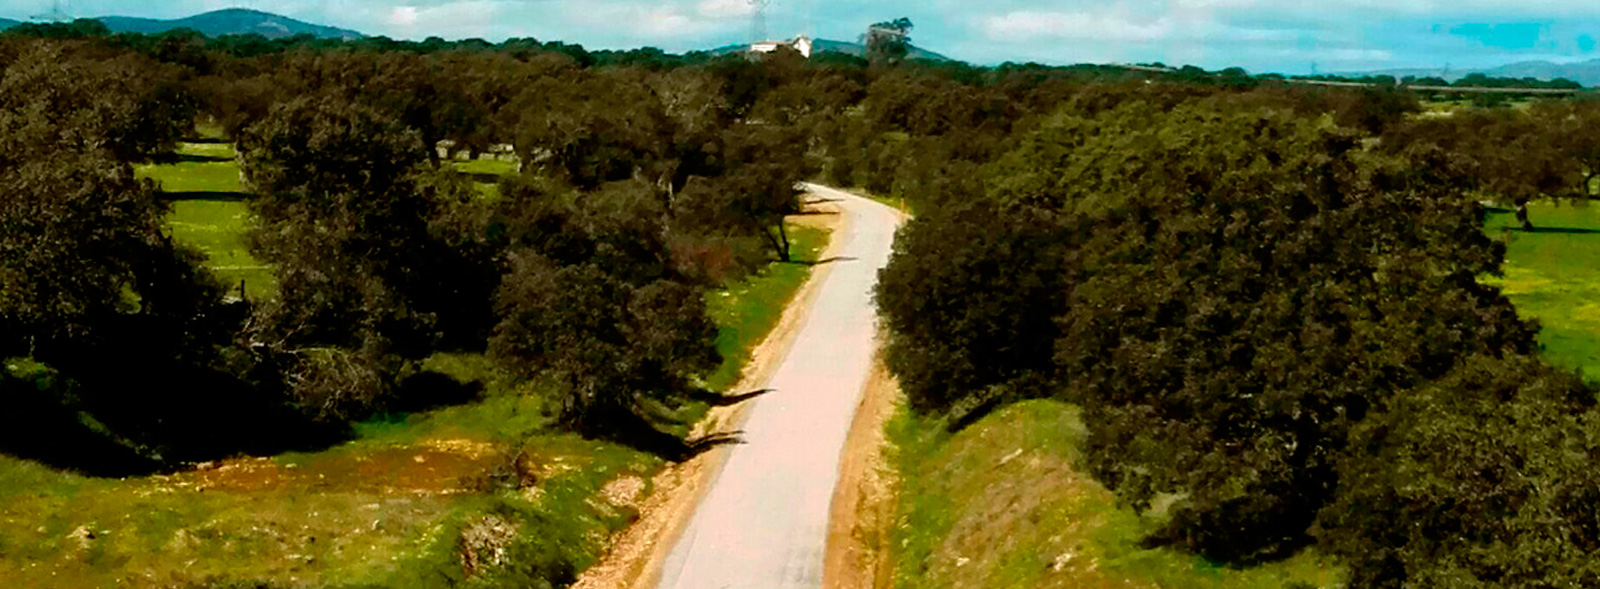 Vía Verde de Monfragüe - Descripción de la ruta